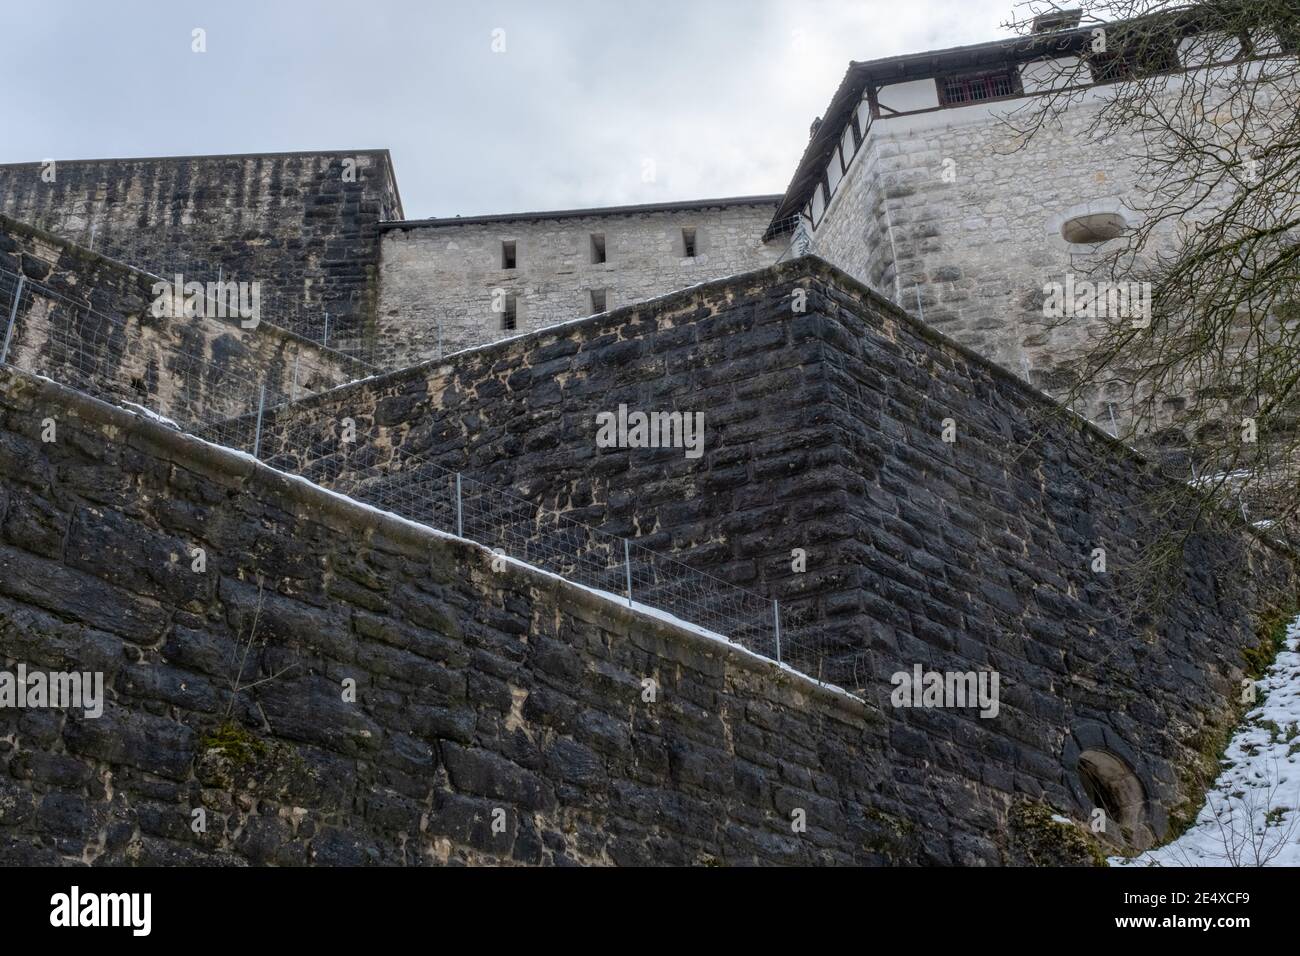 Dunkle, bedrohliche Mauern einer Festung Stock Photo